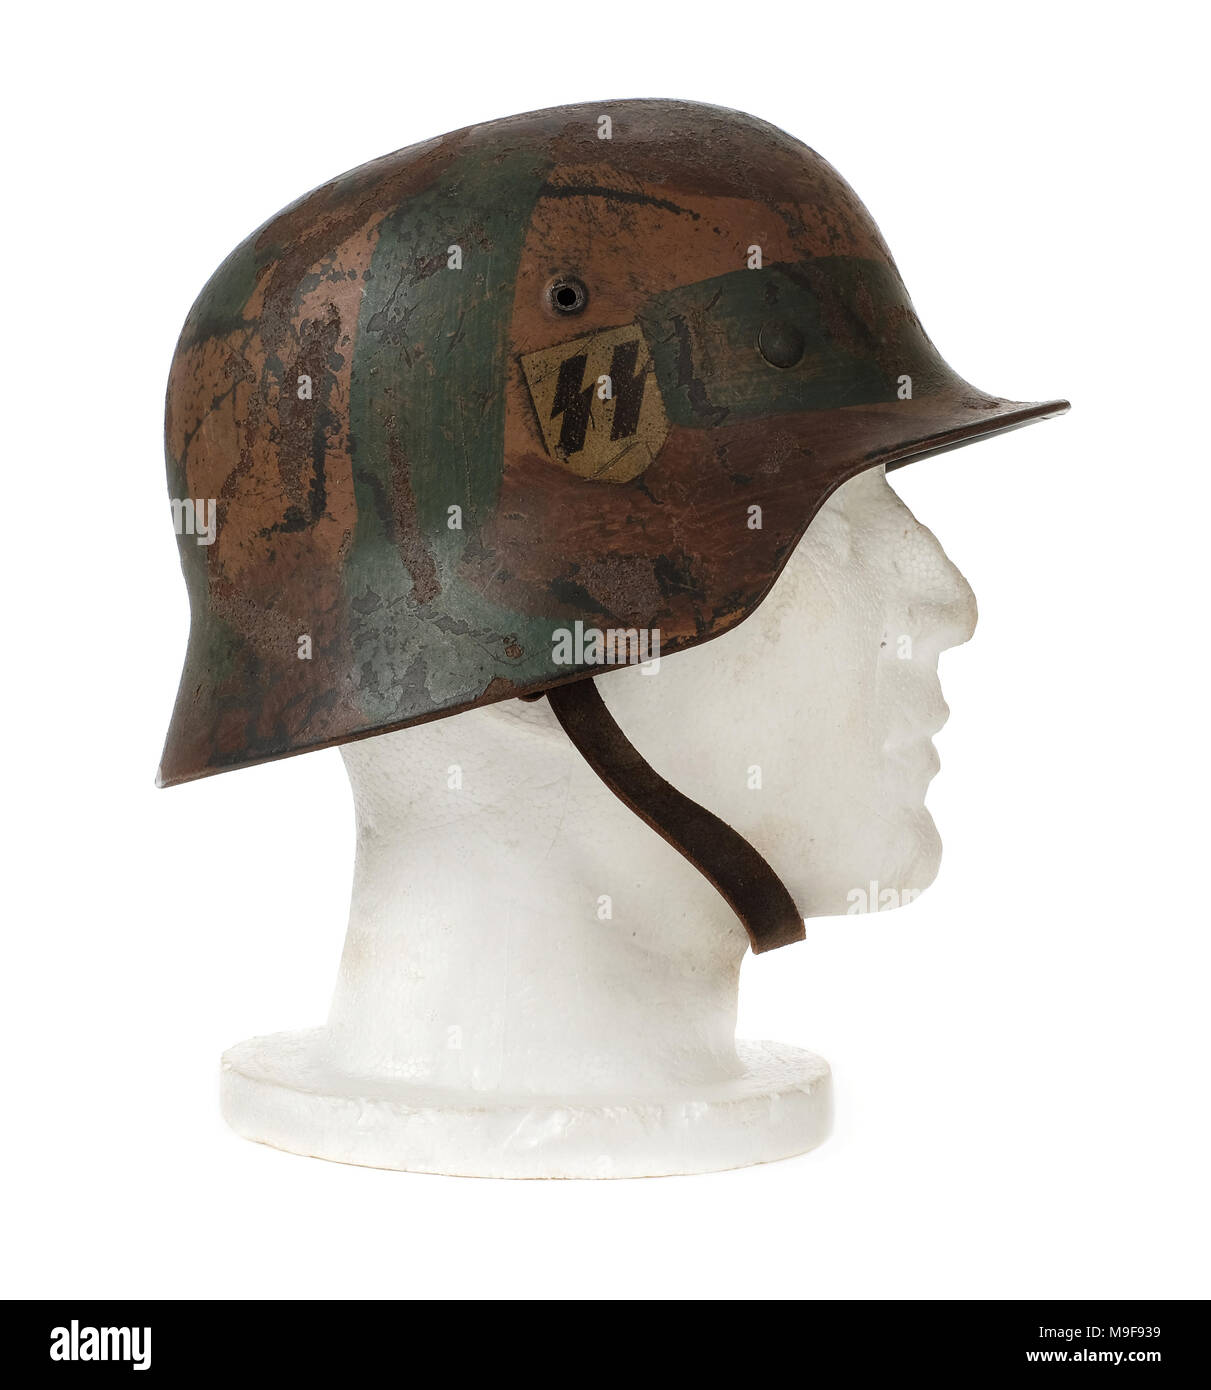 WW2 German Third Reich 'SS' steel helmet (M40 Stahlhelm) from 1940 with original Swastika and SS decals, made by Eisen und Huttenwerke A.G. Thale. Stock Photo